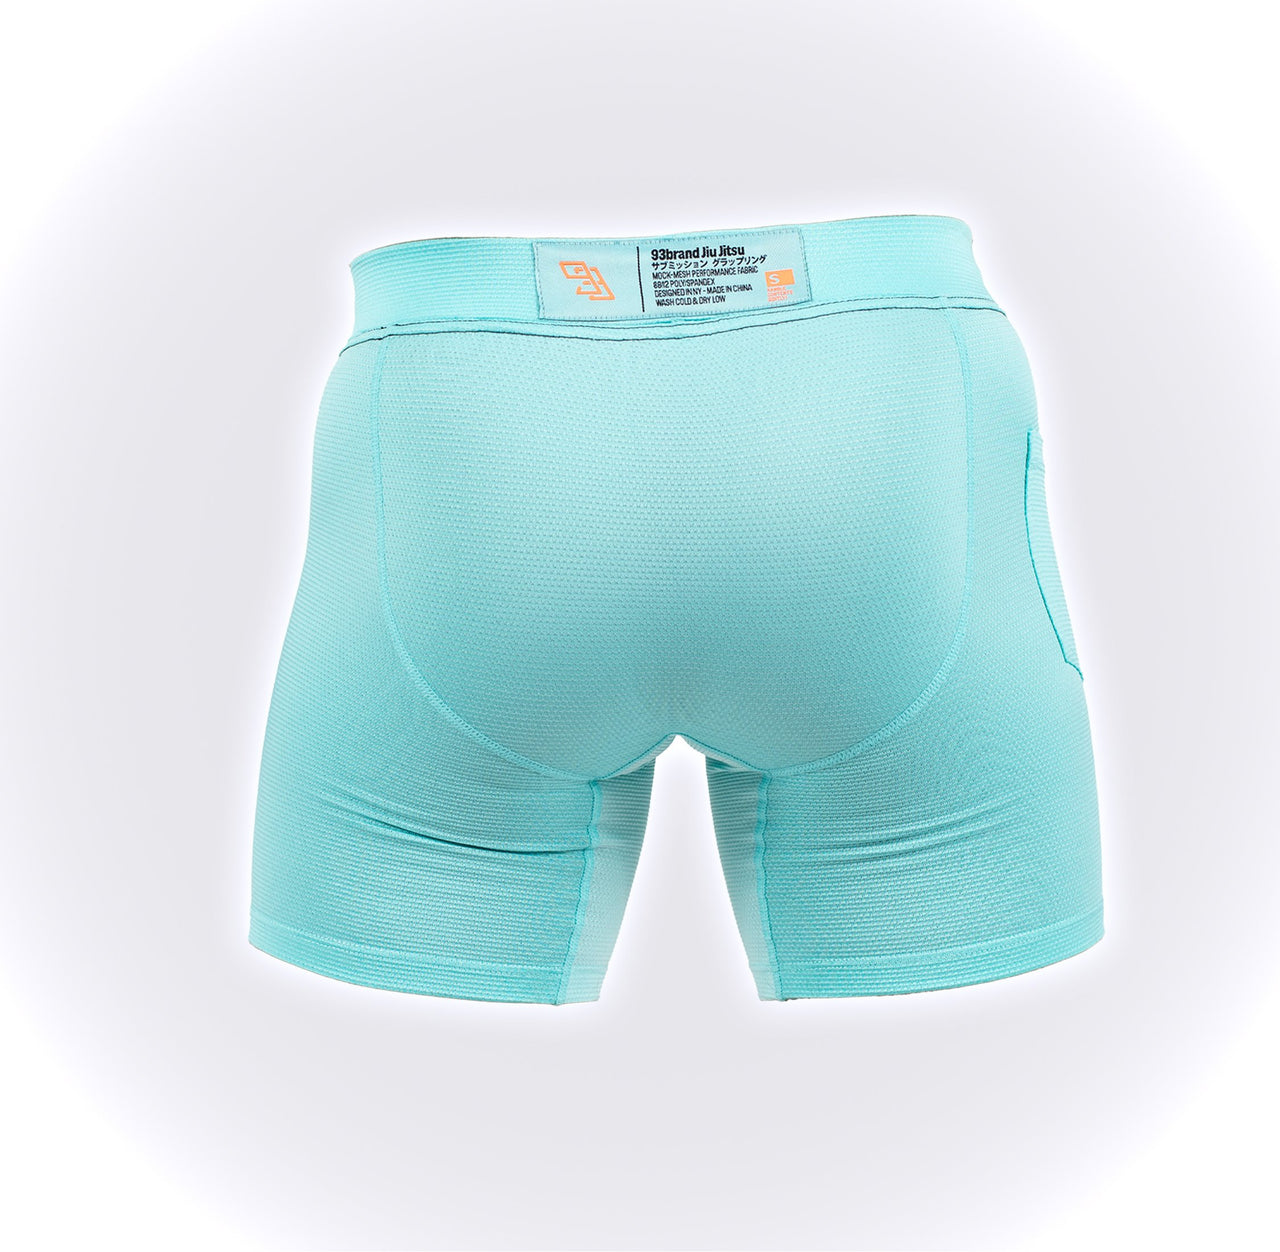 93brand Grappling Underwear 2-PACK (Version 2.0)